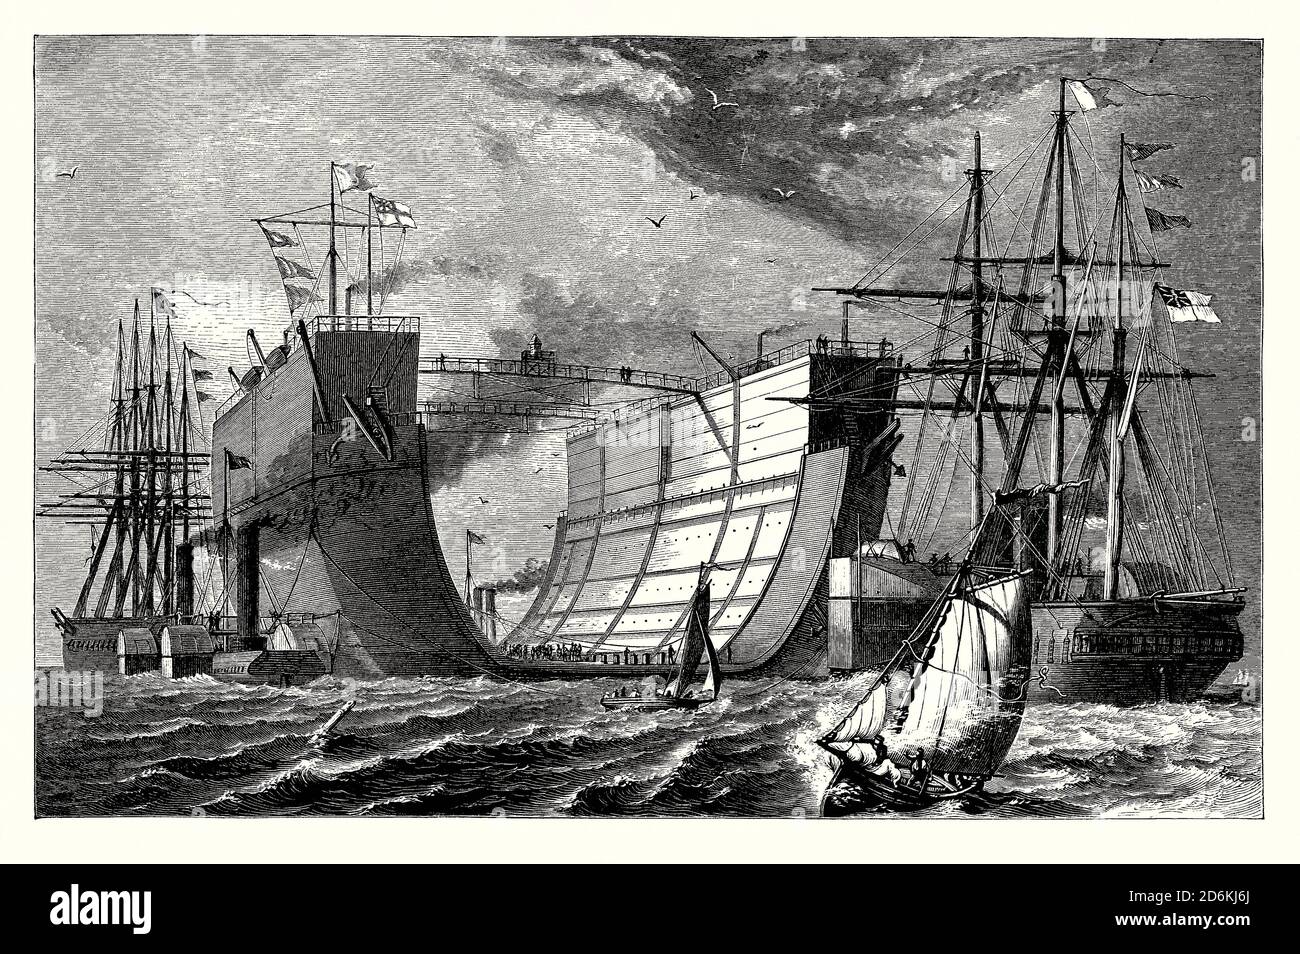 Un viejo grabado que muestra el dique seco flotante británico ‘Bermuda’ bajo remolque, dos herronclads haciendo el remolque, en el Océano Atlántico en 1869. Es de un libro victoriano de la década de 1880. El mantenimiento del casco de hierro requería un muelle seco en todo el mundo – se utilizaron versiones móviles flotantes. Bermuda fue construido en el astillero Campbell and Johnstone Thames. Fue lanzado en 1868. Las maniobras fueron asistidas por el HMS "terrible" (mostrado a la izquierda). Llegó a Bermuda en julio de 1869. El dique seco fue reemplazado por un nuevo muelle de acero en 1906. Sus restos aún son visibles frente a Spanish Point, Bermuda. Foto de stock